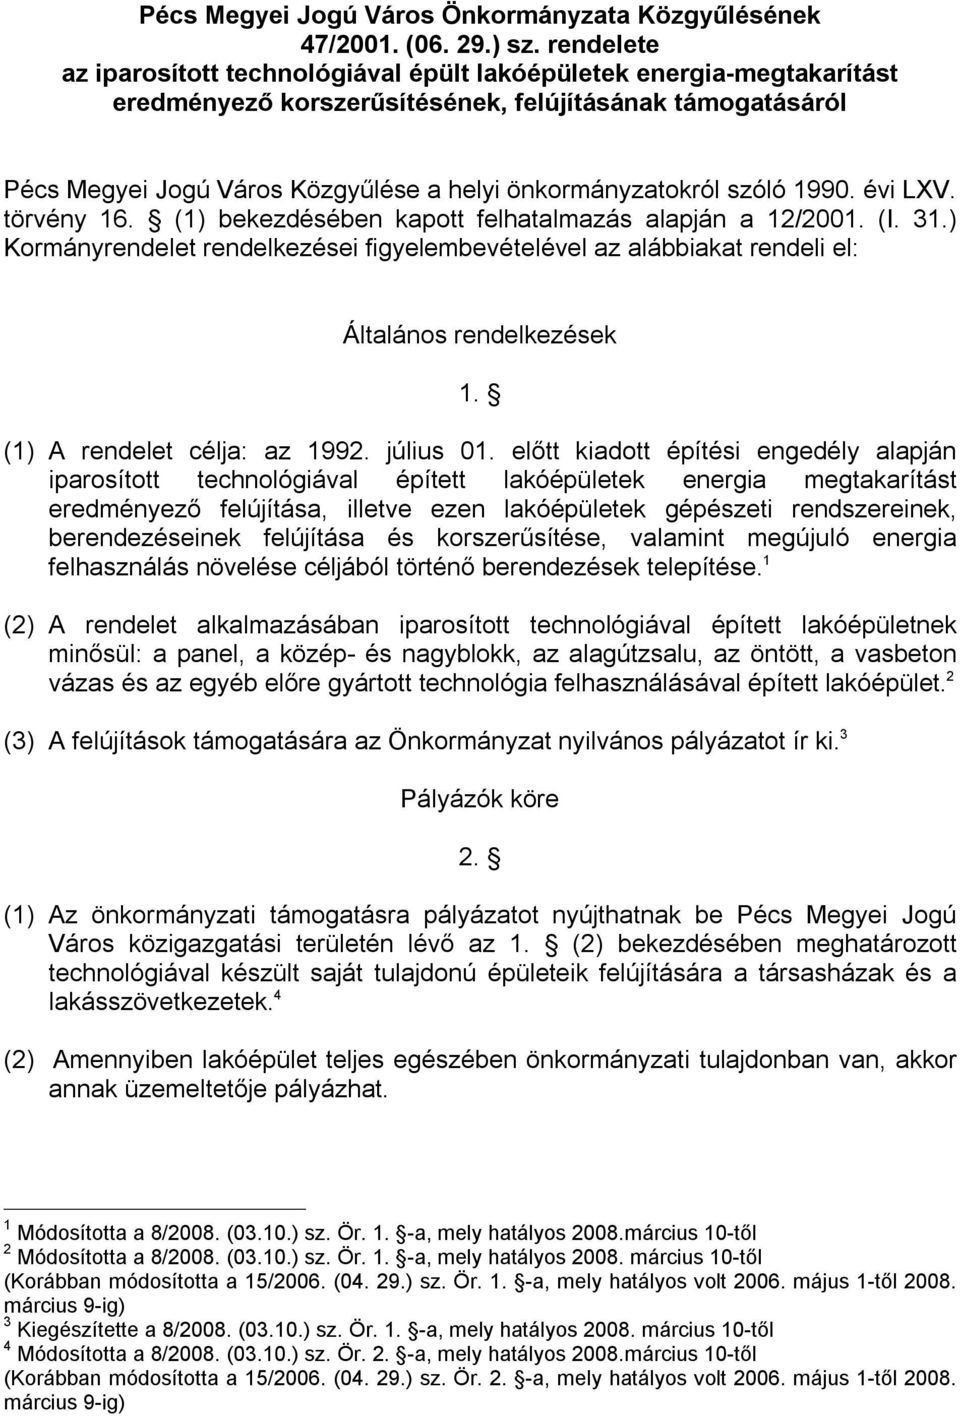 szóló 1990. évi LXV. törvény 16. (1) bekezdésében kapott felhatalmazás alapján a 12/2001. (I. 31.